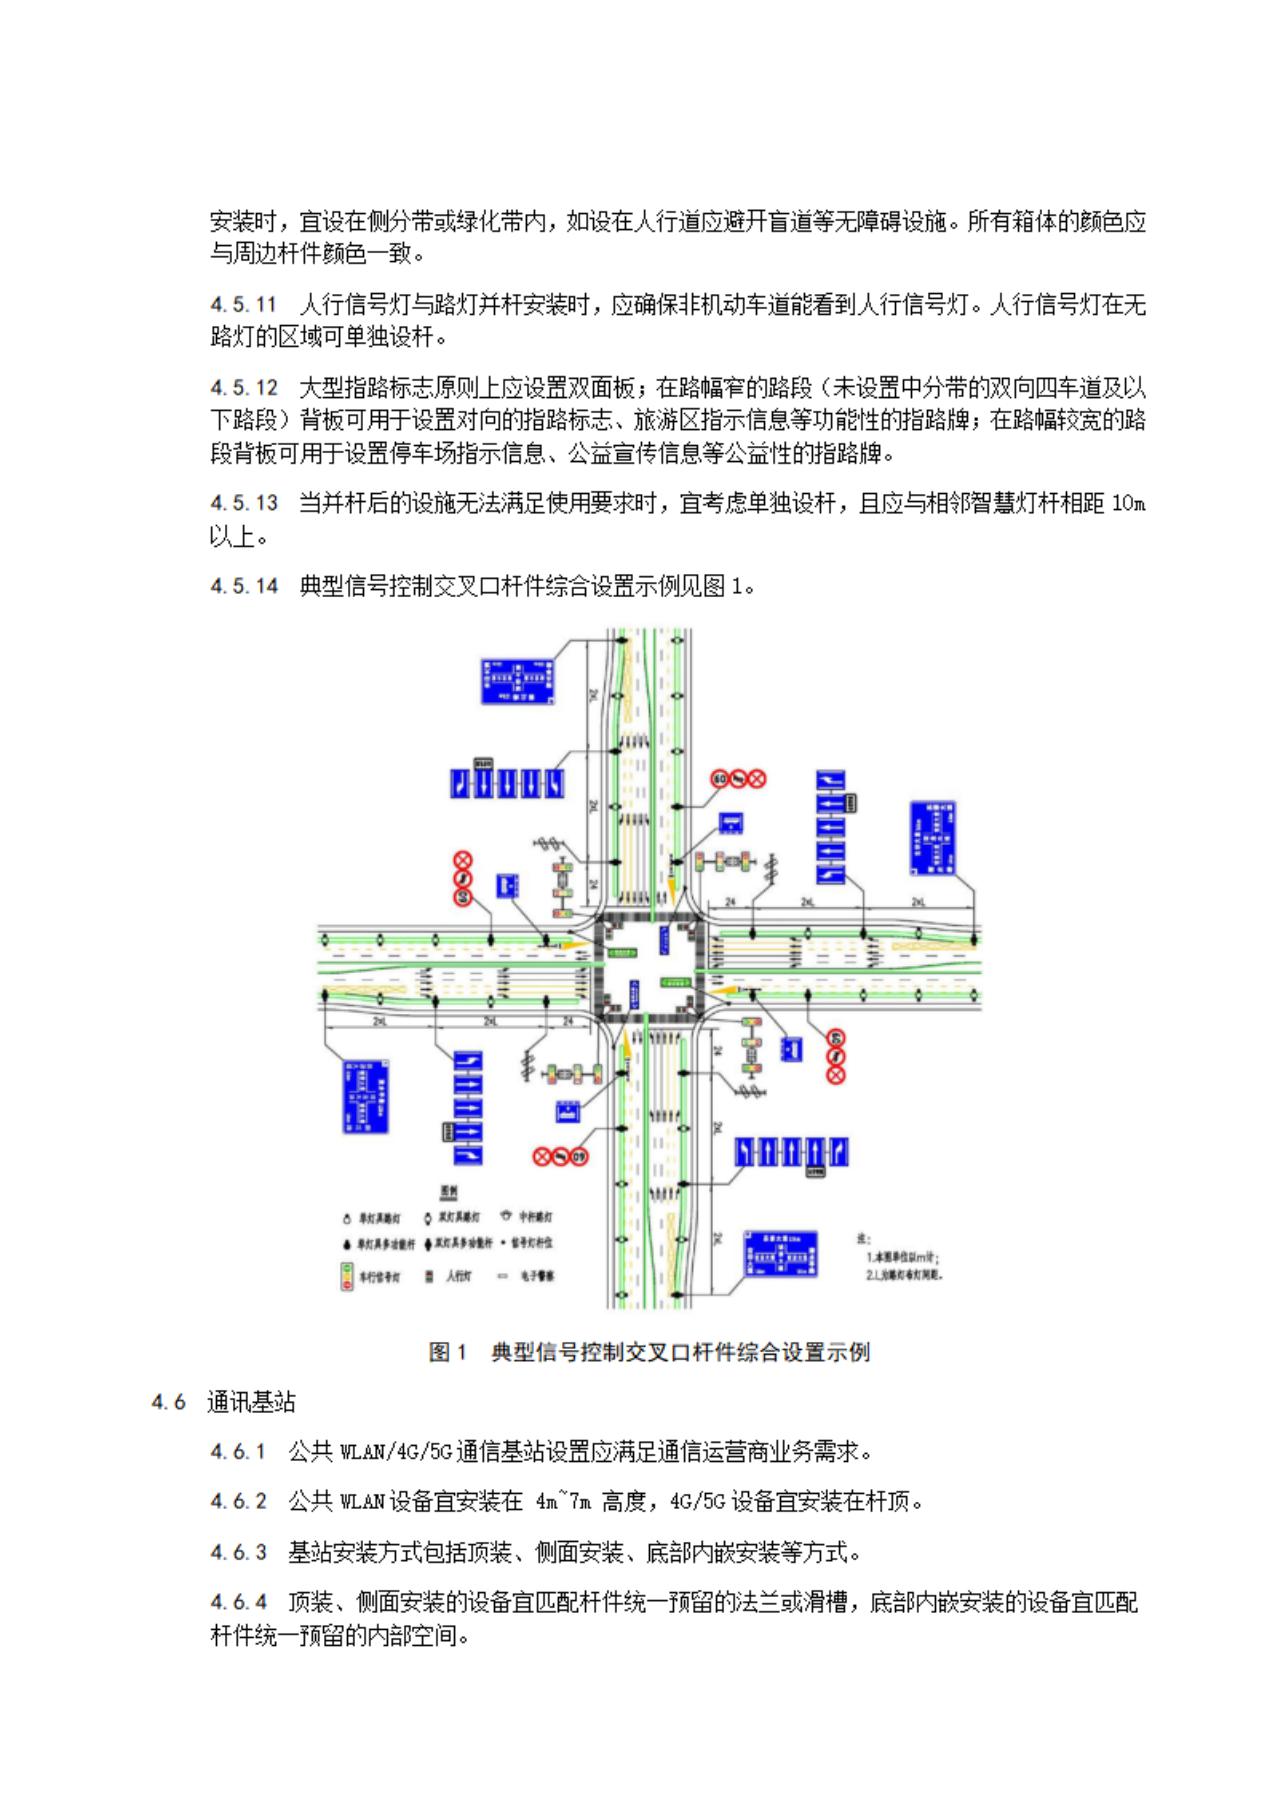 扬州市智慧灯杆应用导则（征求意见稿）_07.jpg